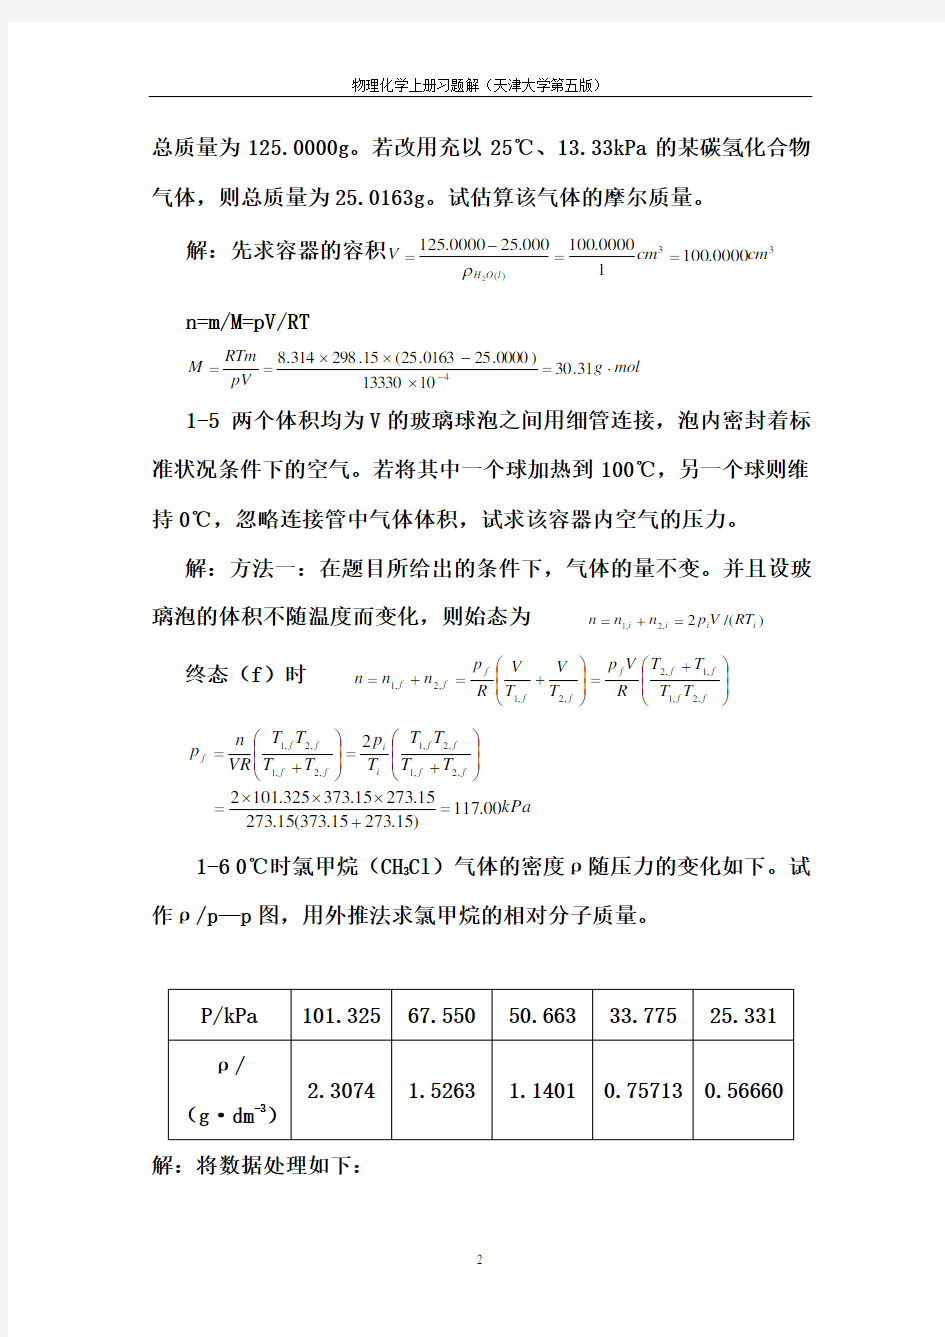 天津大学第五版-刘俊吉-物理化学课后习题答案(全)